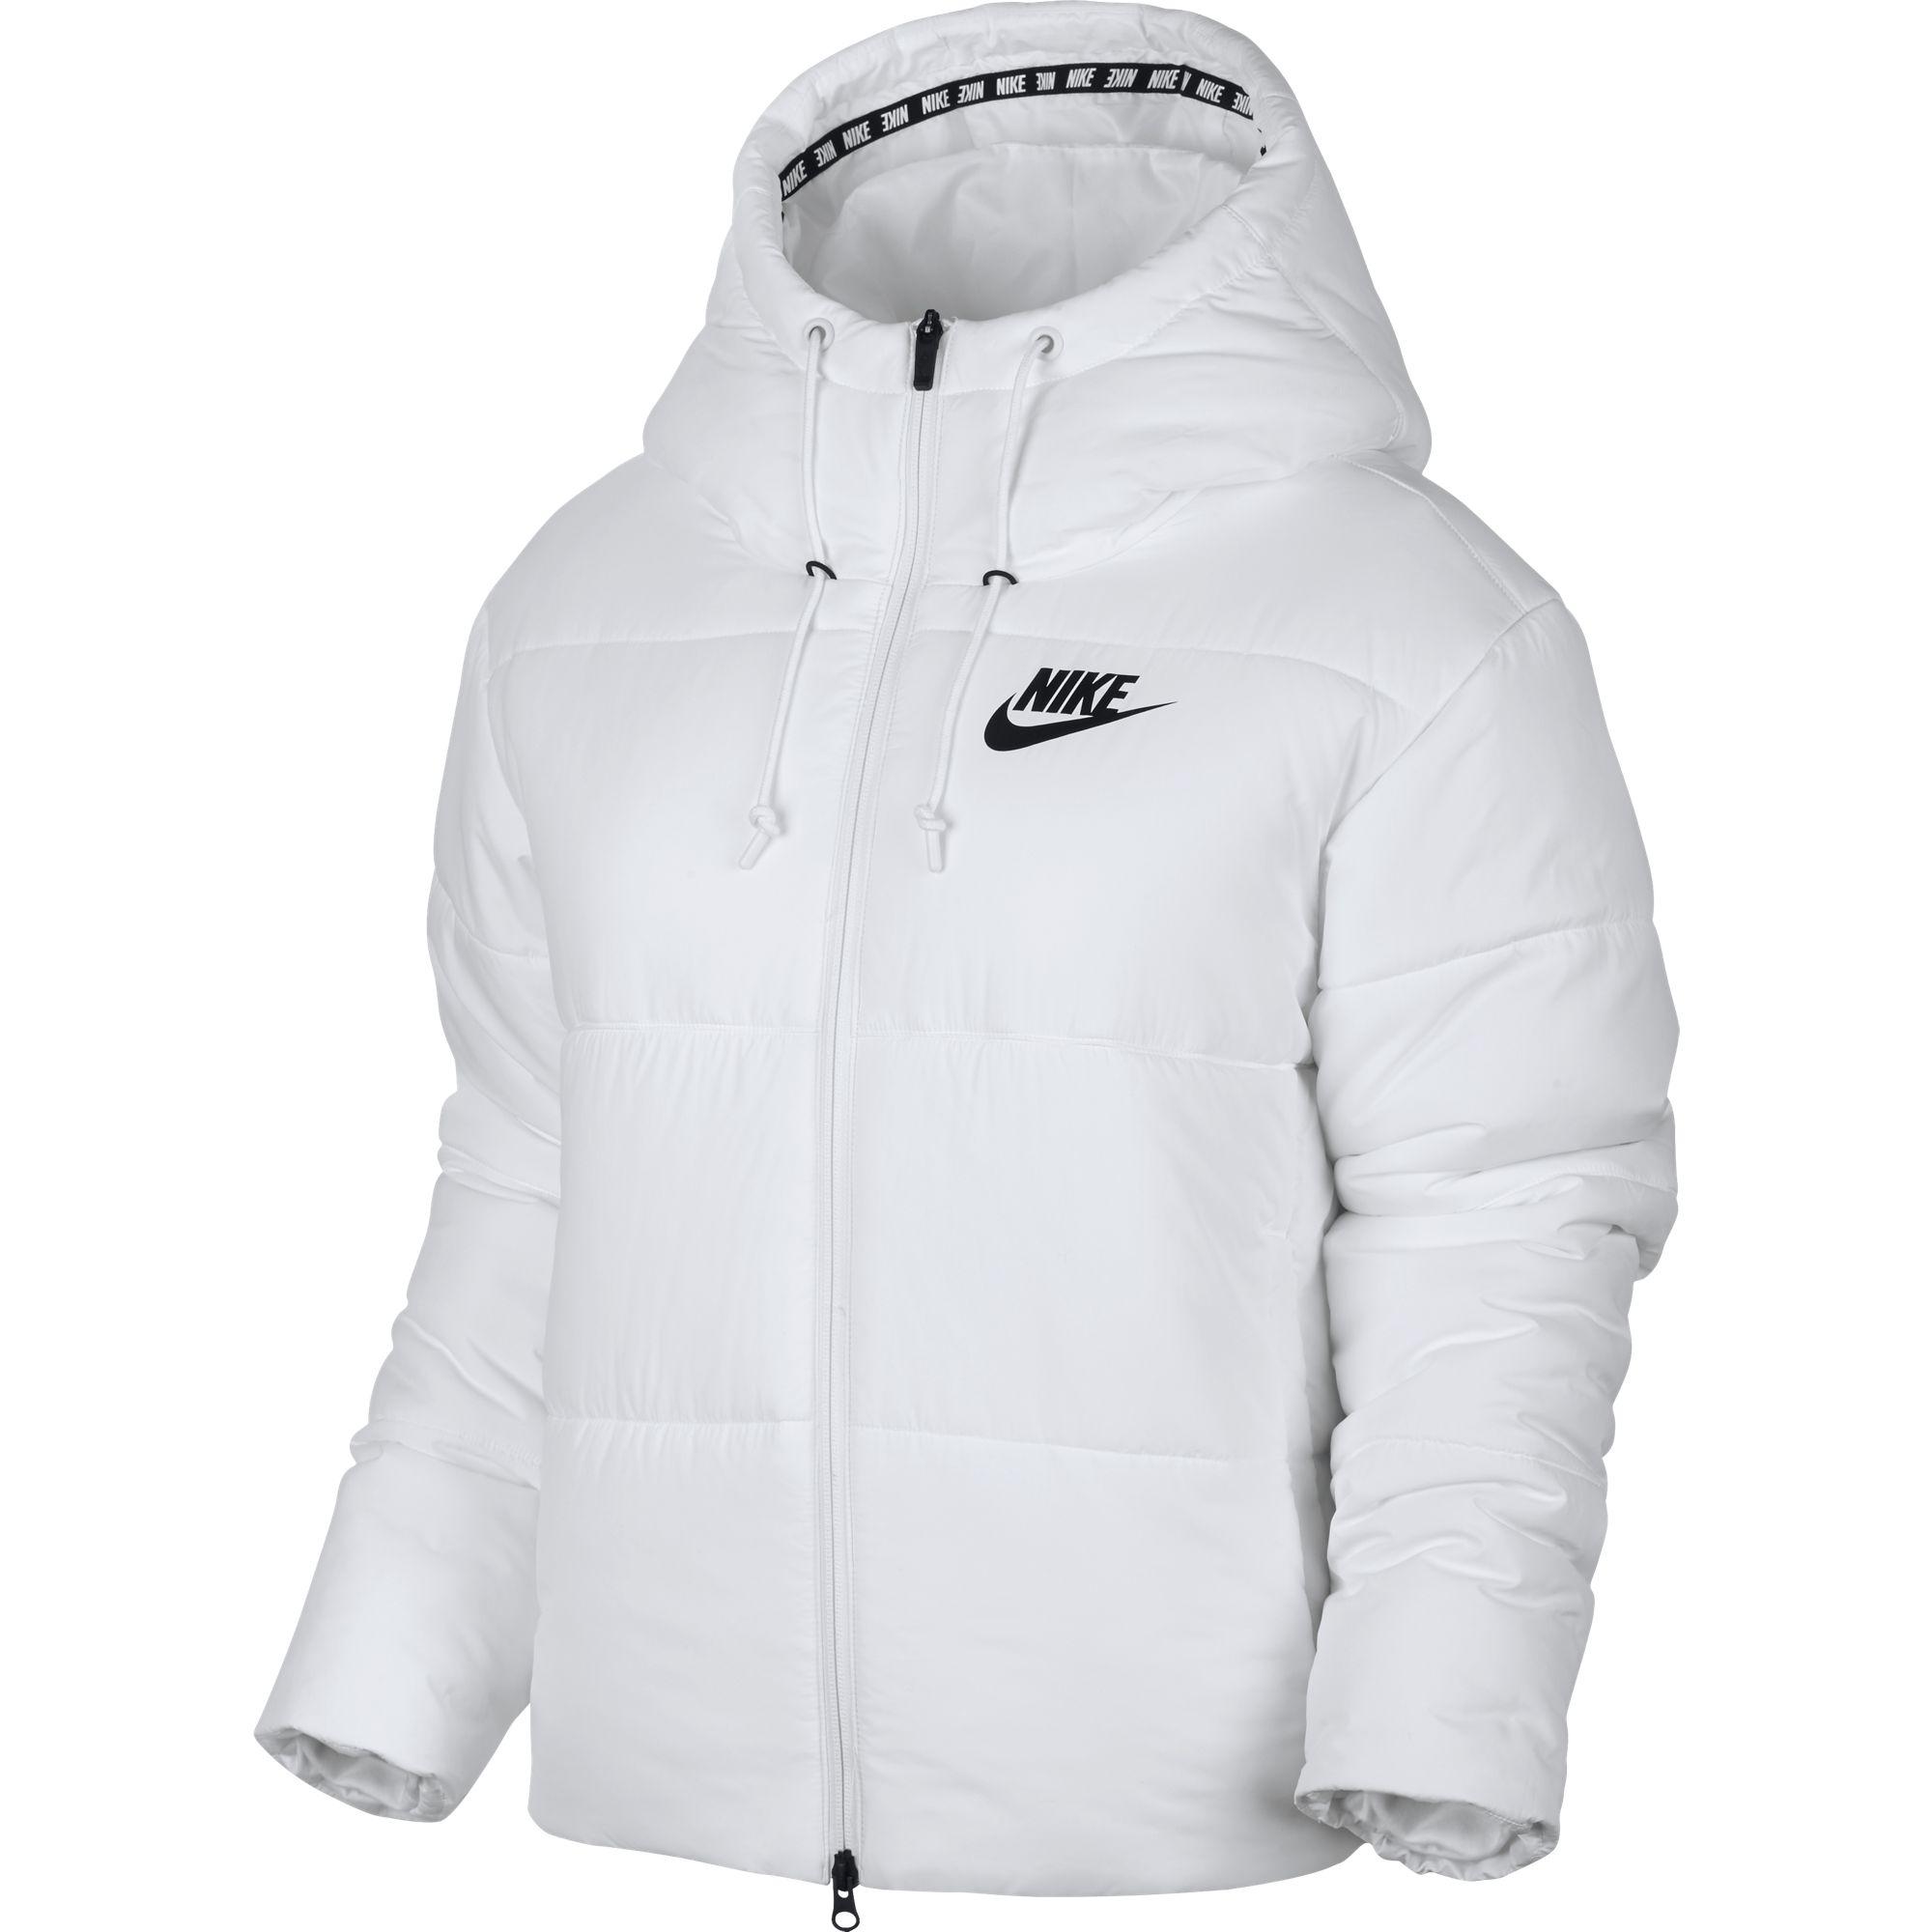 nike white jacket